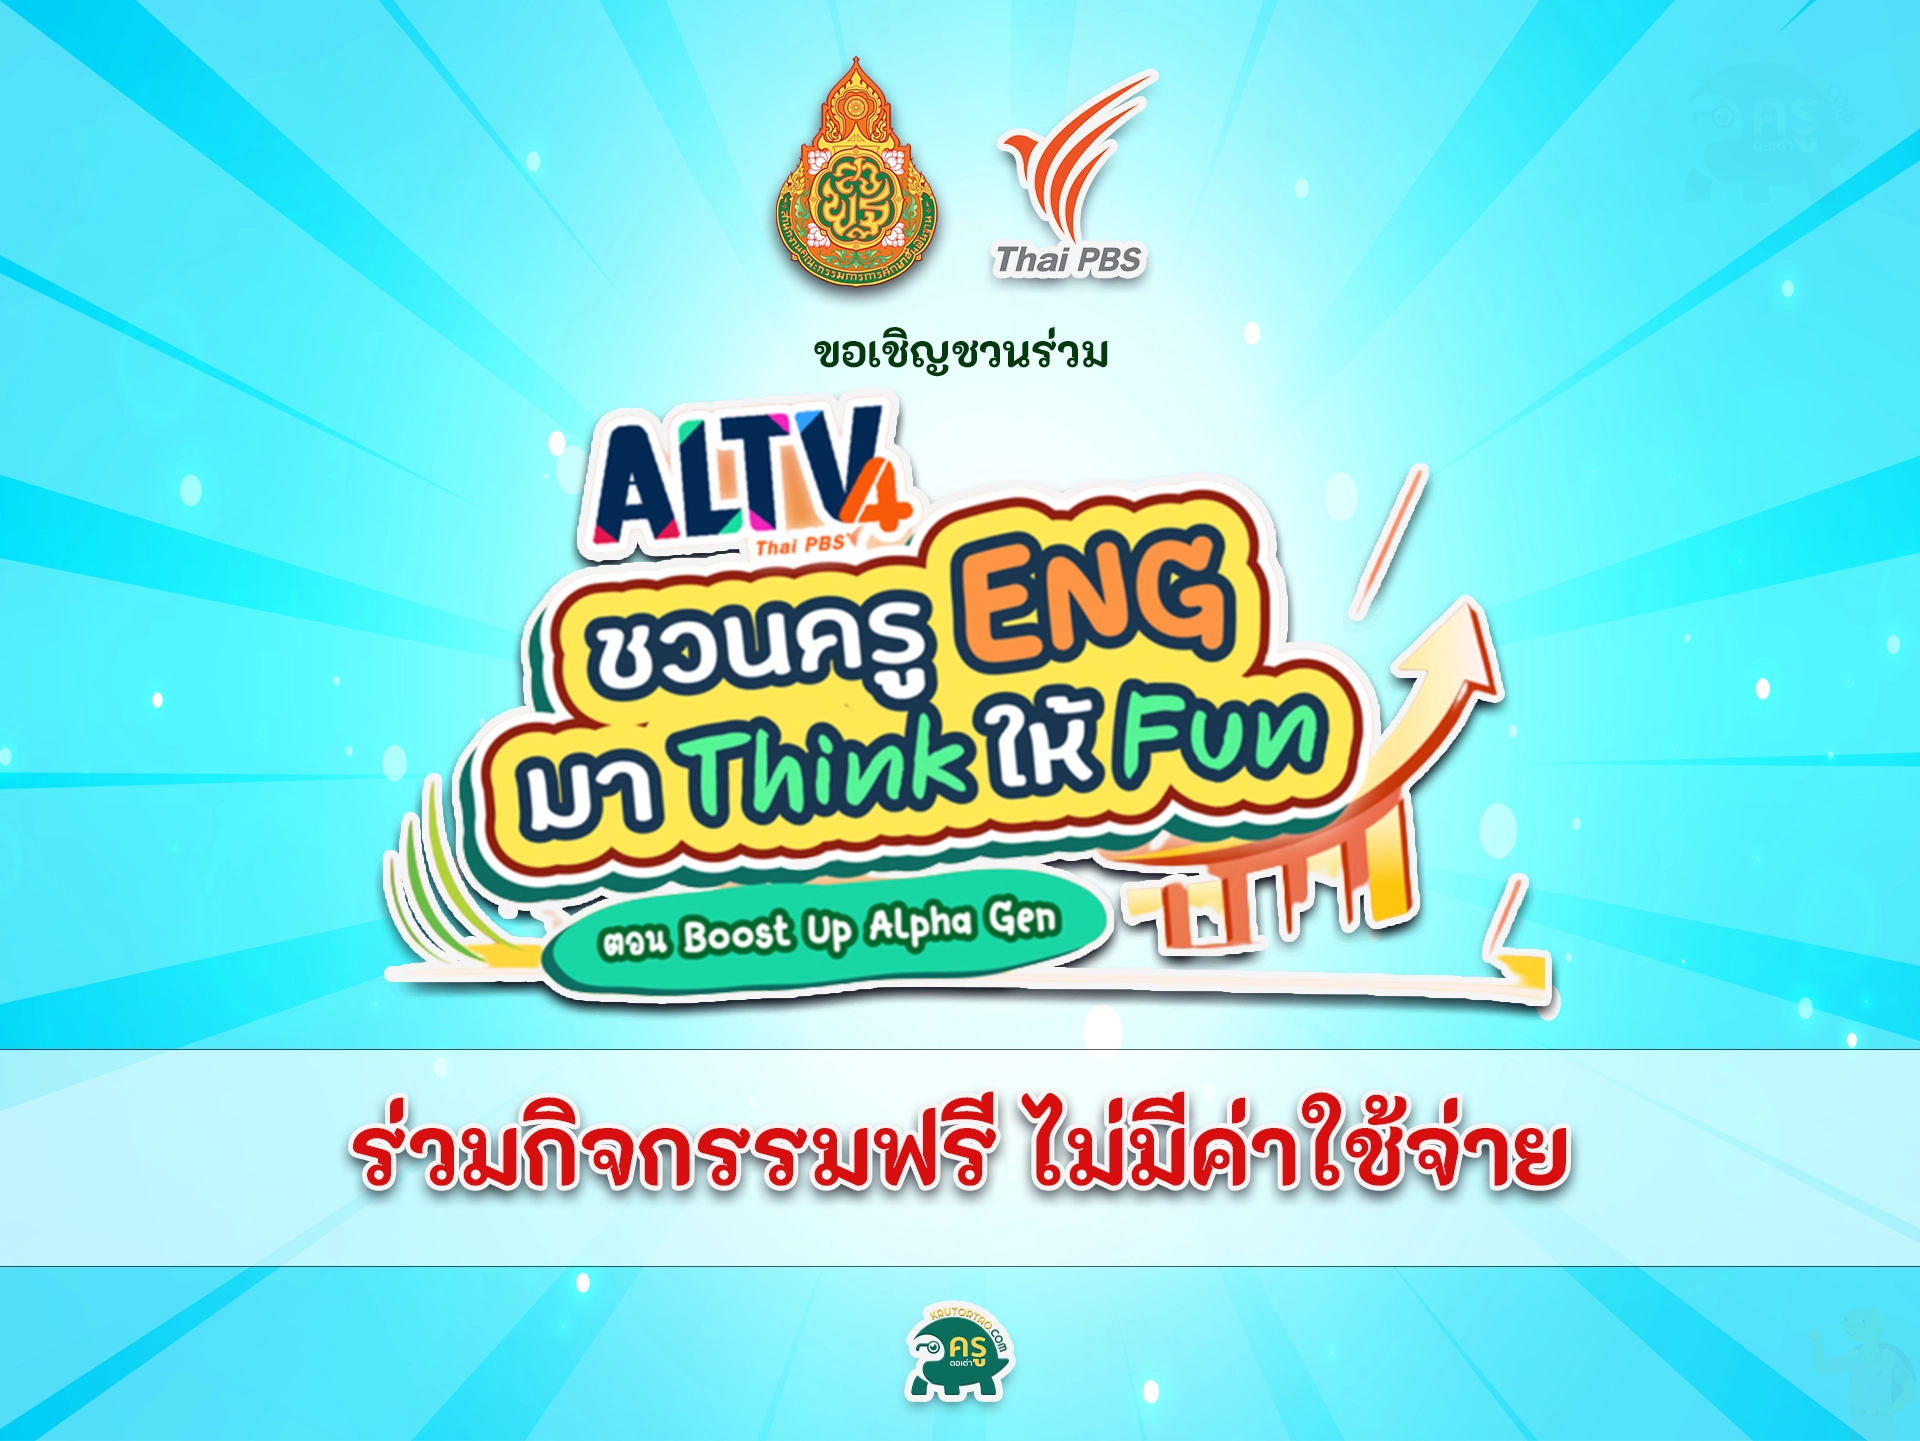 สพฐ. ร่วมกับ ThaiPBS จัดกิจกรรม ALTV ชวนครู ENG มา Think ให้ FUN ลุ้นรับสื่อการสอนมูลค่า 100,000 บาท ประจำปี 2566